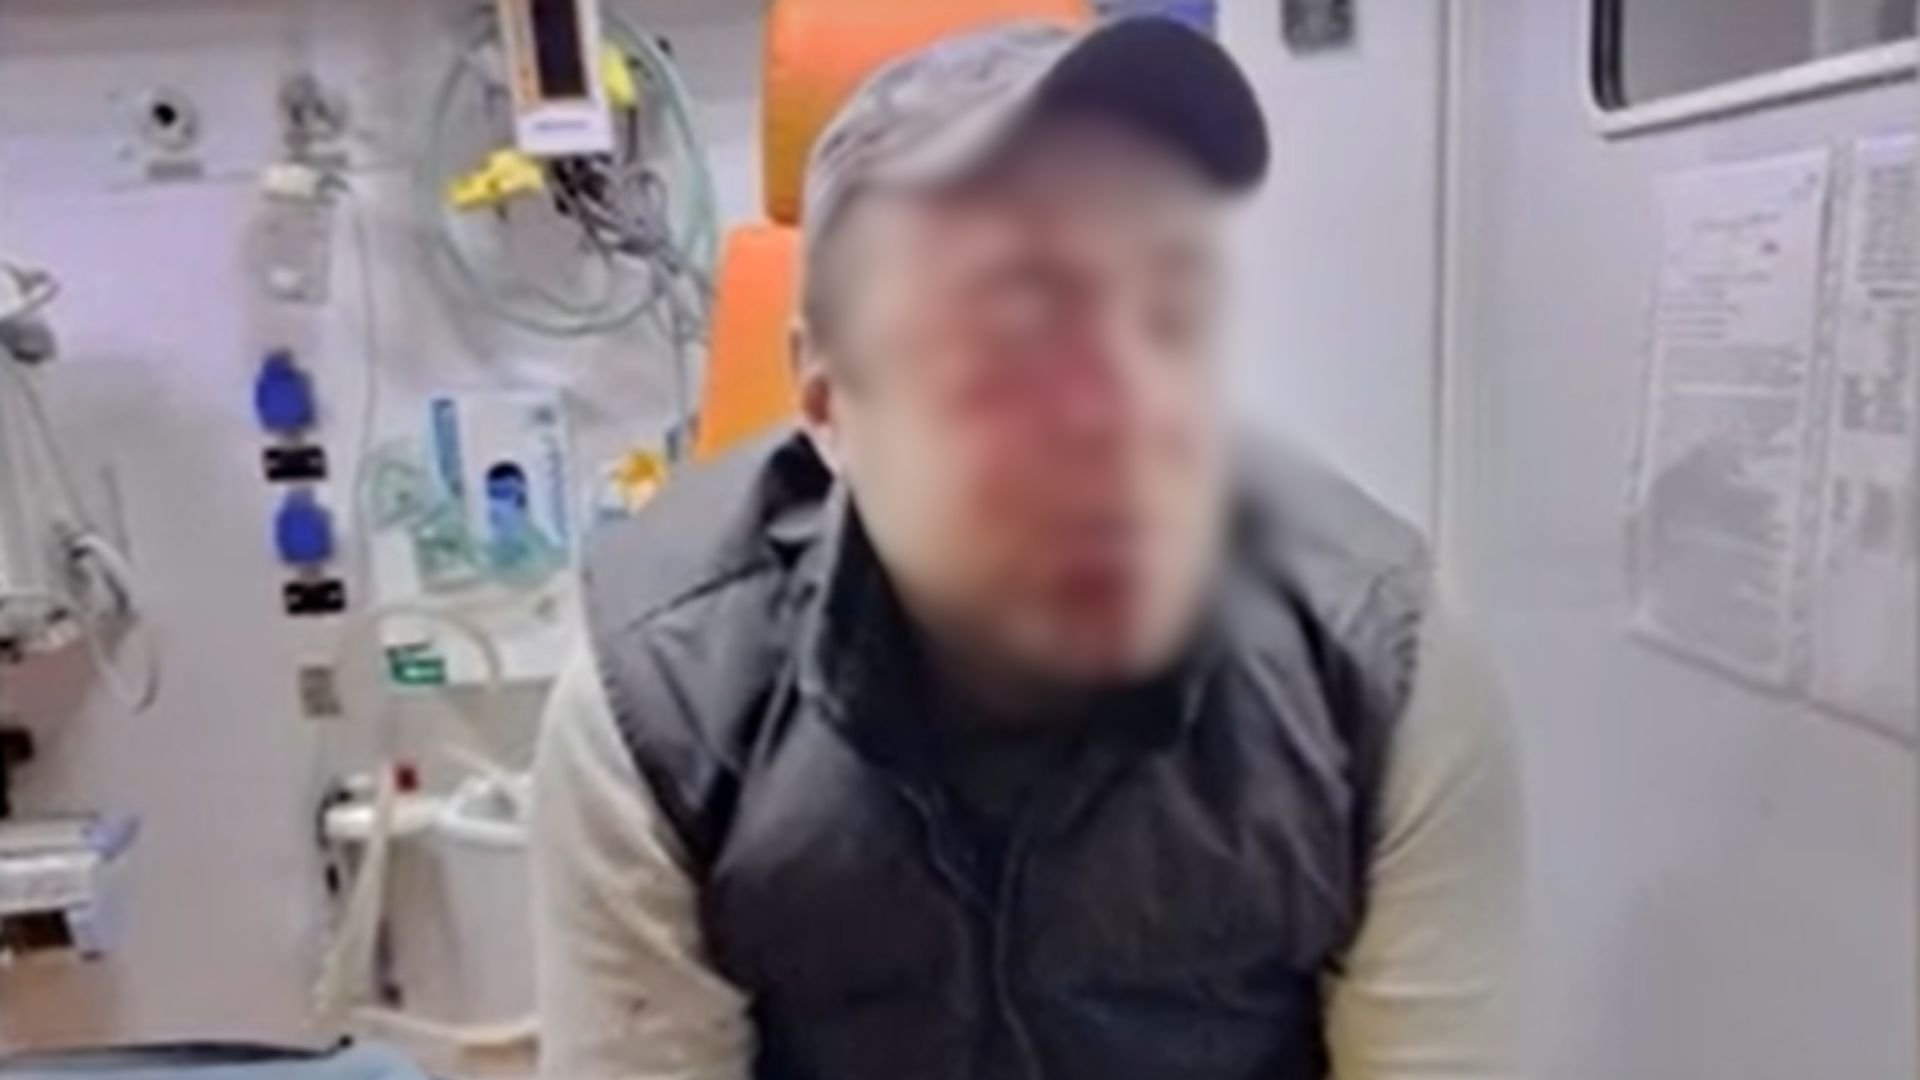 В супермаркете в Тернополе мужчина в военной форме избил местного жителя, 42-летнего Ореста Панькива, который имеет инвалидность. По его словам, мужчина и его знакомый представились сотрудниками ТЦК. Инцидент произошел 14 апреля.